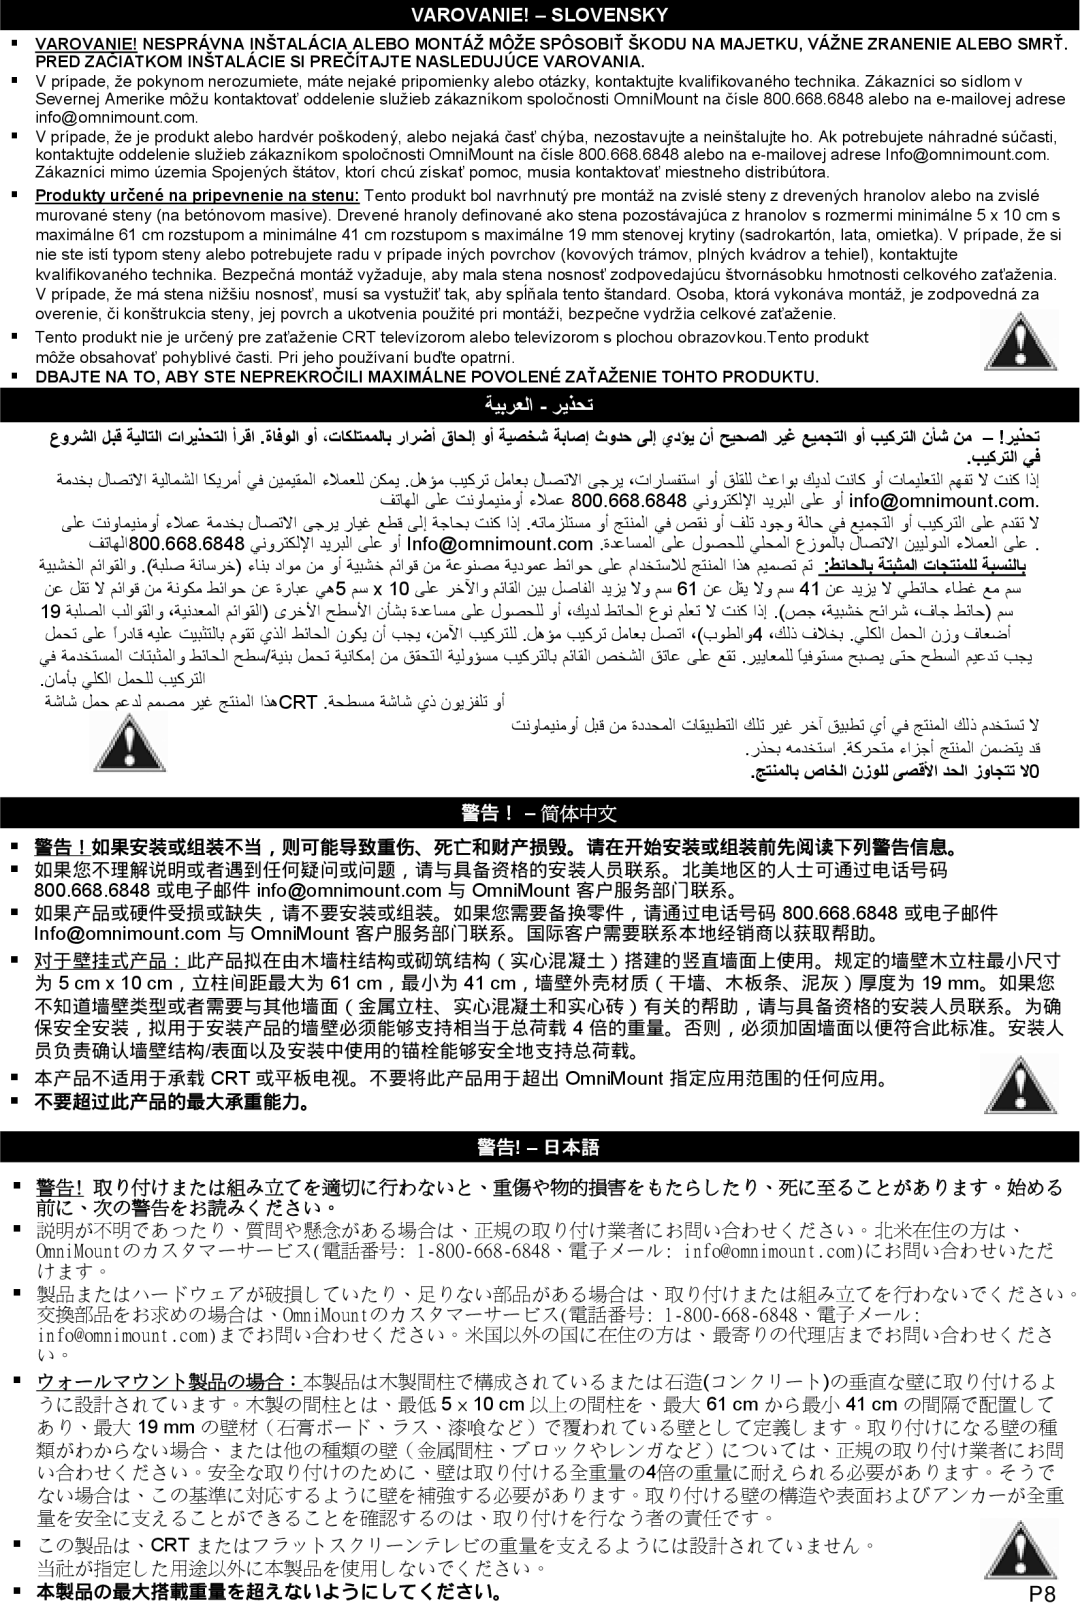 Omnimount OM10020 instruction manual ﺔﻴﺑﺮﻌﻟا - ﺮﻳﺬﺤﺗ, 警告！ - 简体中文, ƒ不要超过此产品的最大承重能力。, ƒ 本製品の最大搭載重量を超えないようにしてください。 